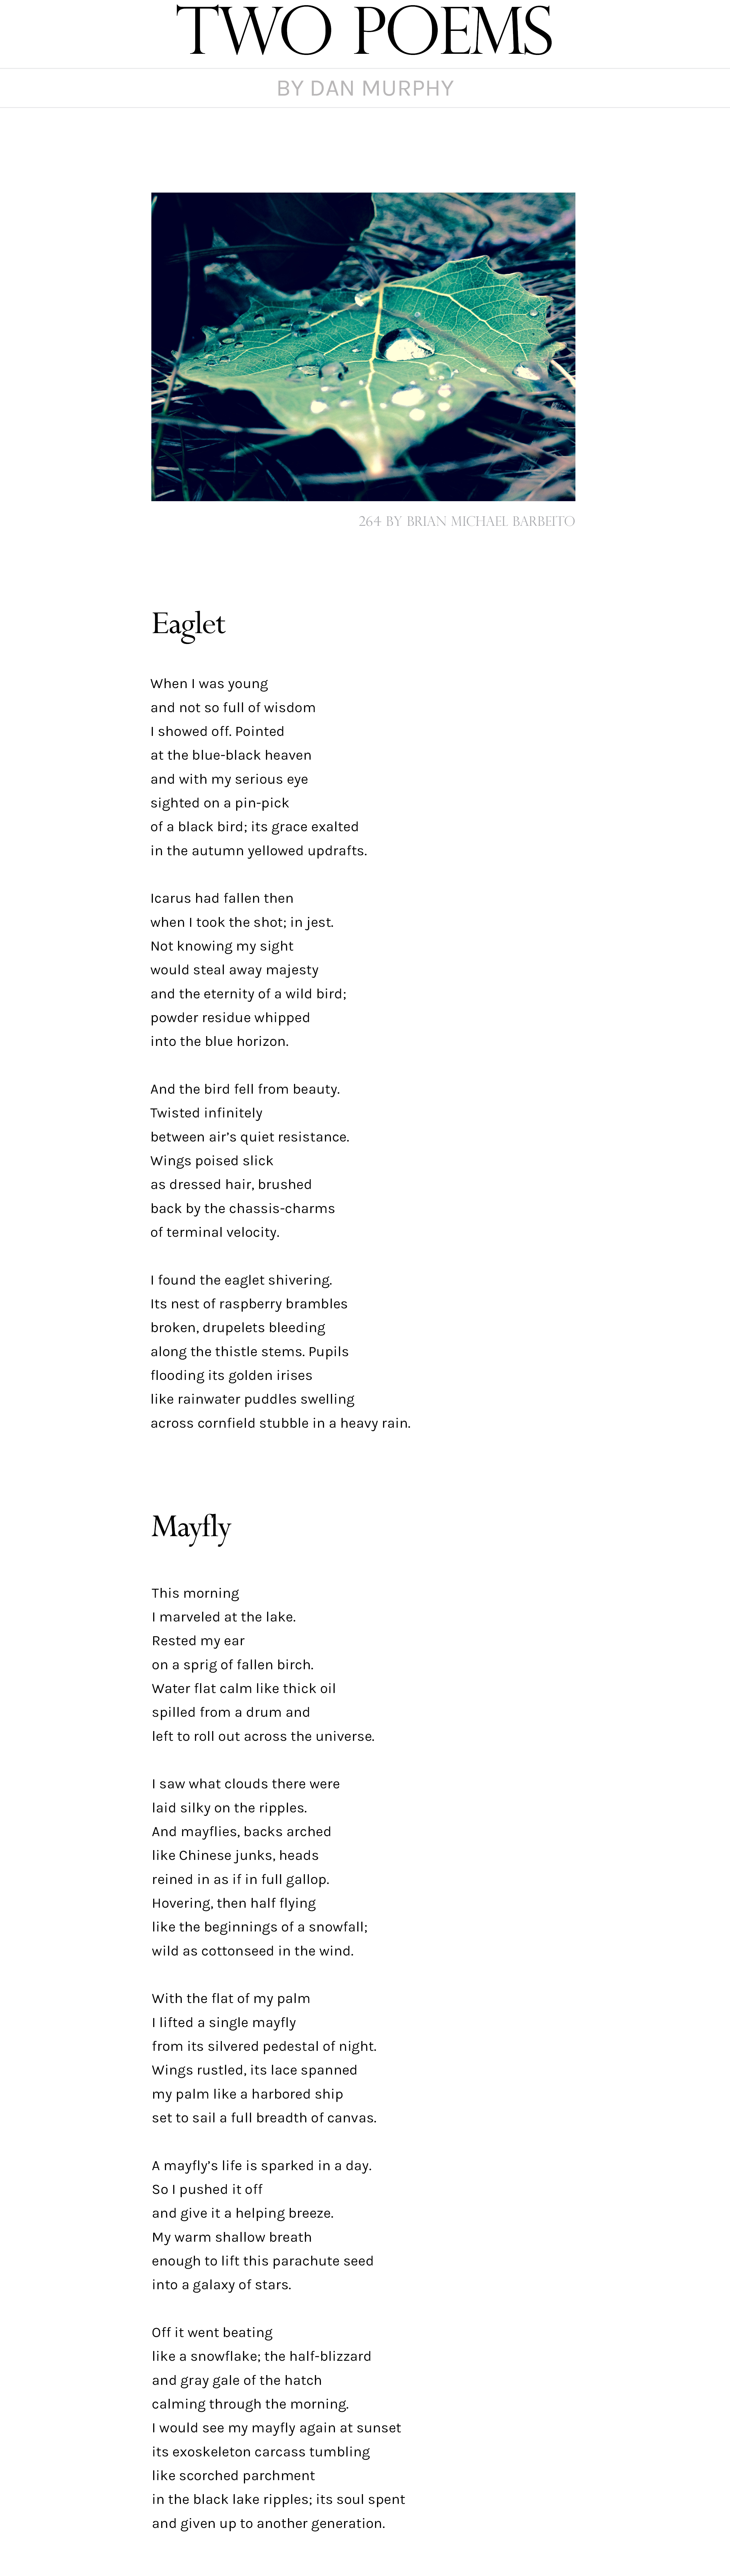 Two Poems by Dan Murphy